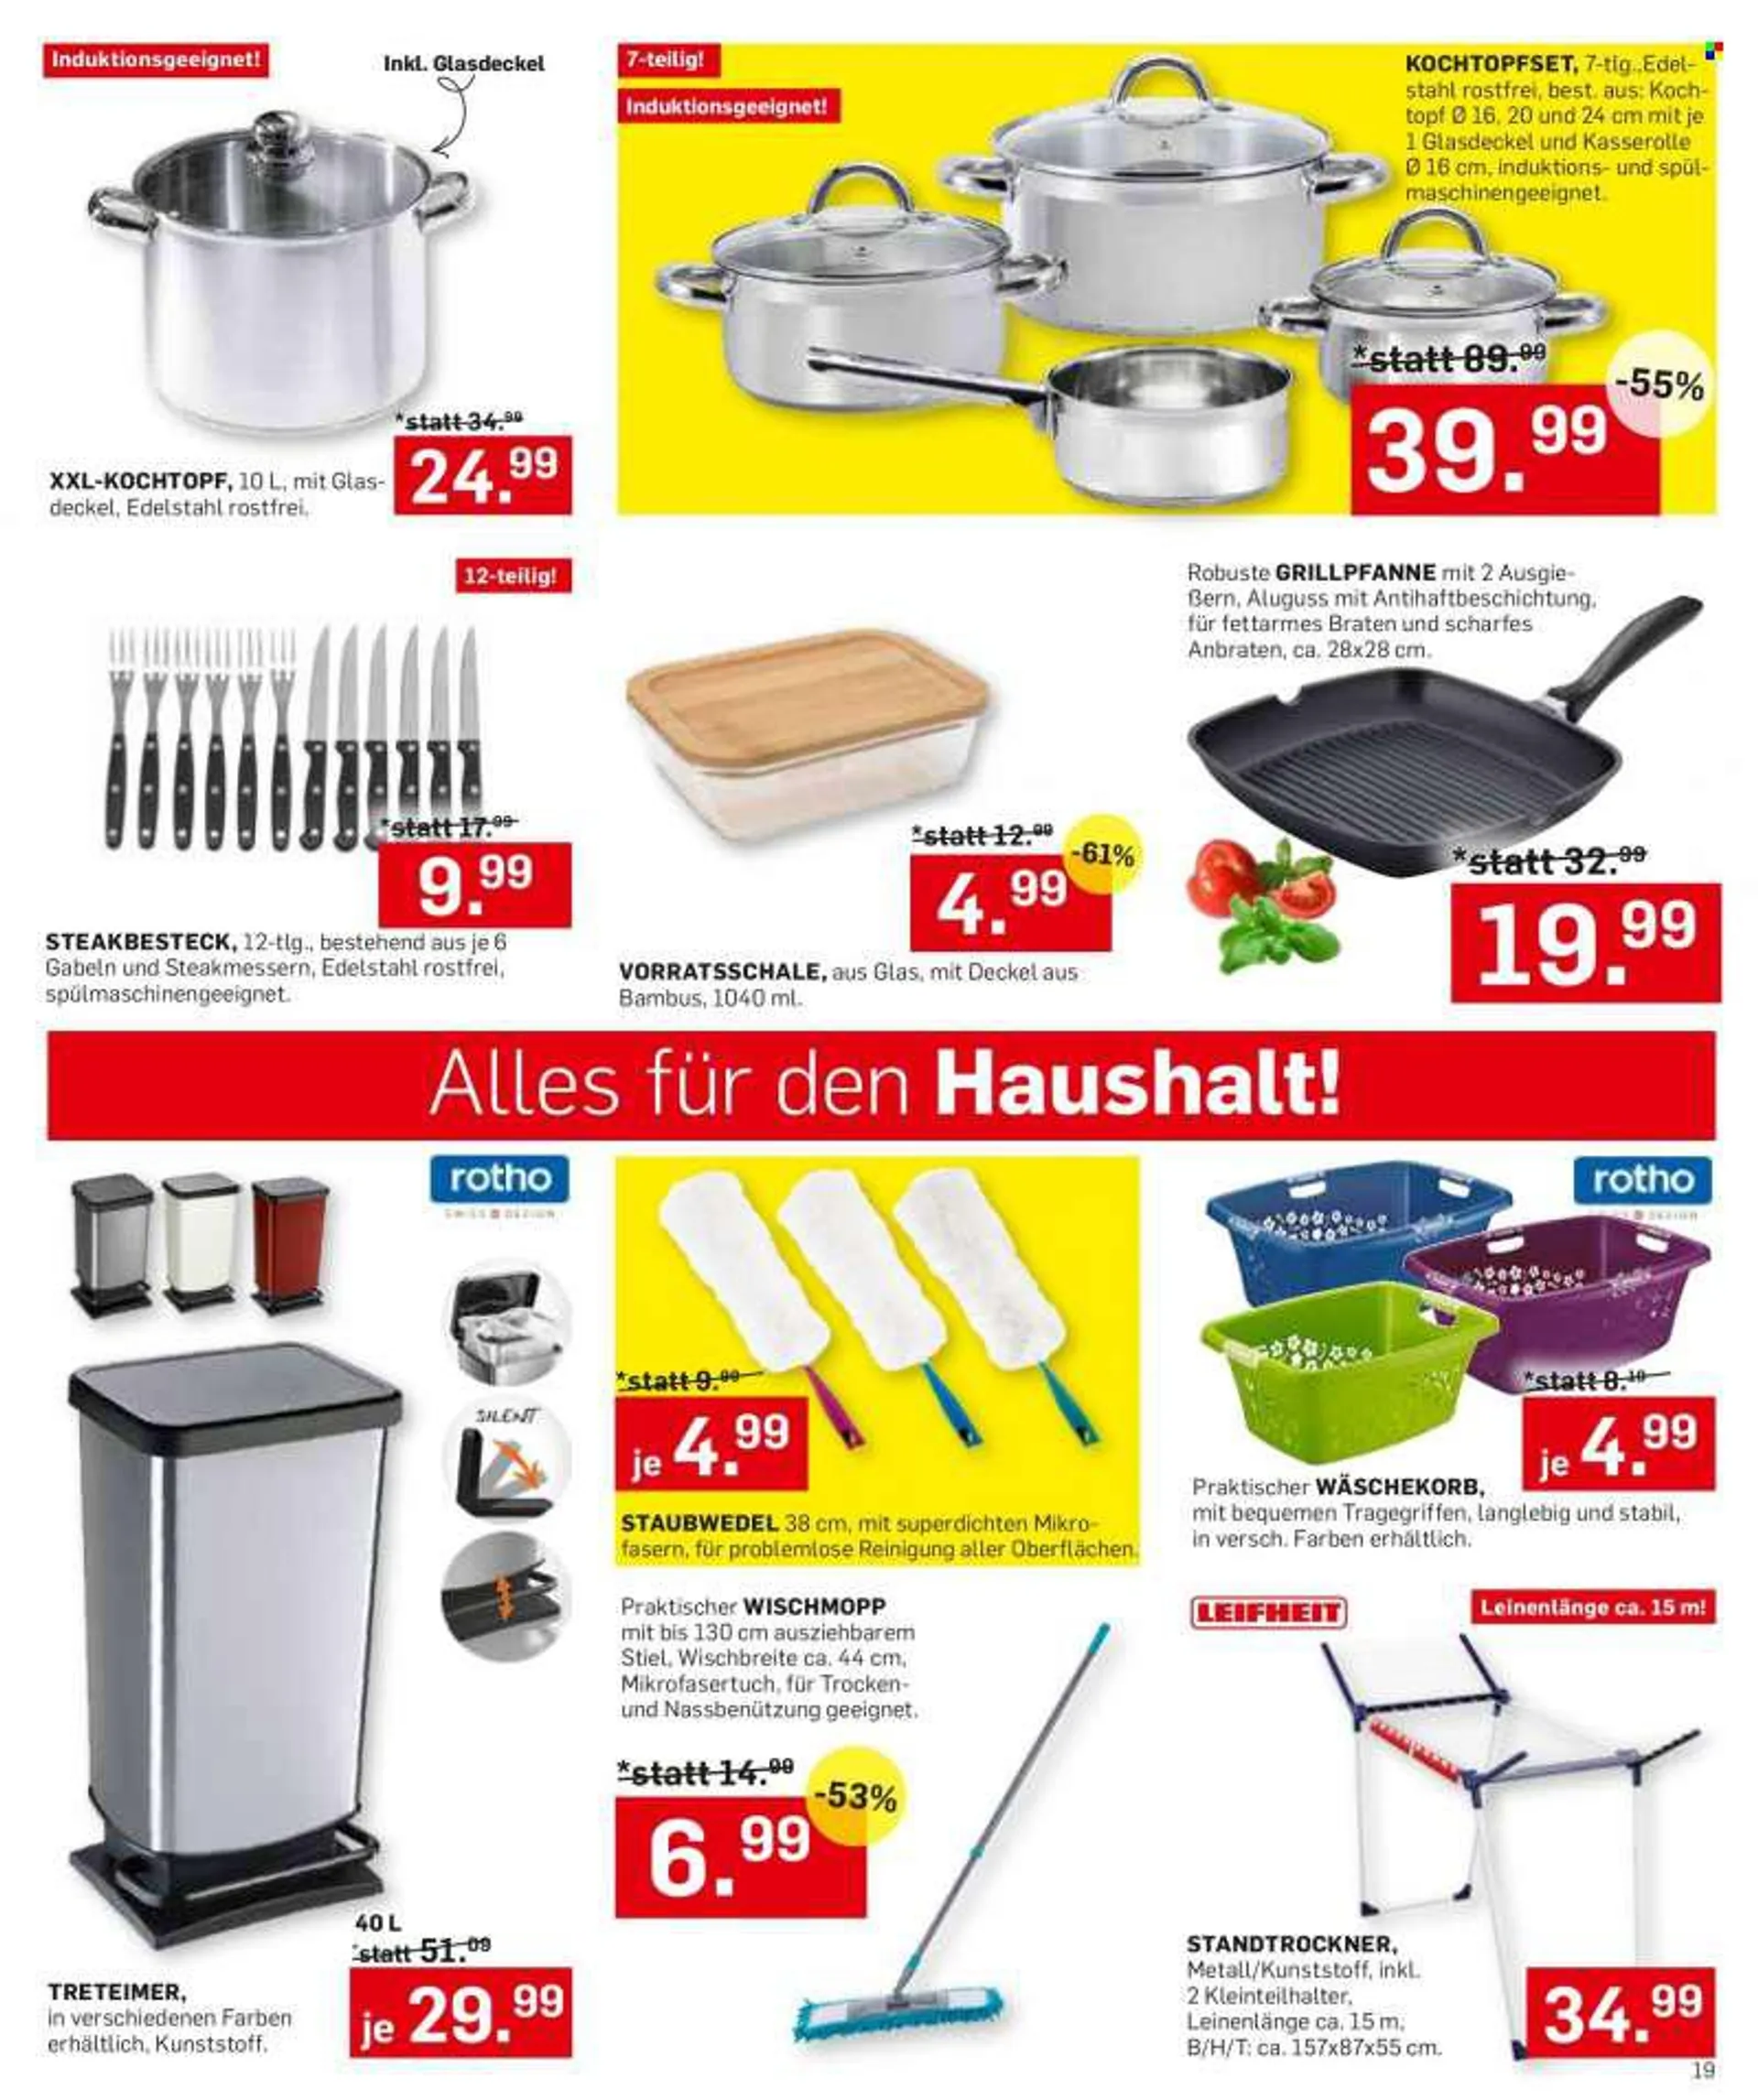 Angebote Möbel Ludwig - Verkaufsprodukte - Wäschekorb, Treteimer, Steakbesteck, Kochtopf, Glasdeckel, Grillpfanne. Seite 19.